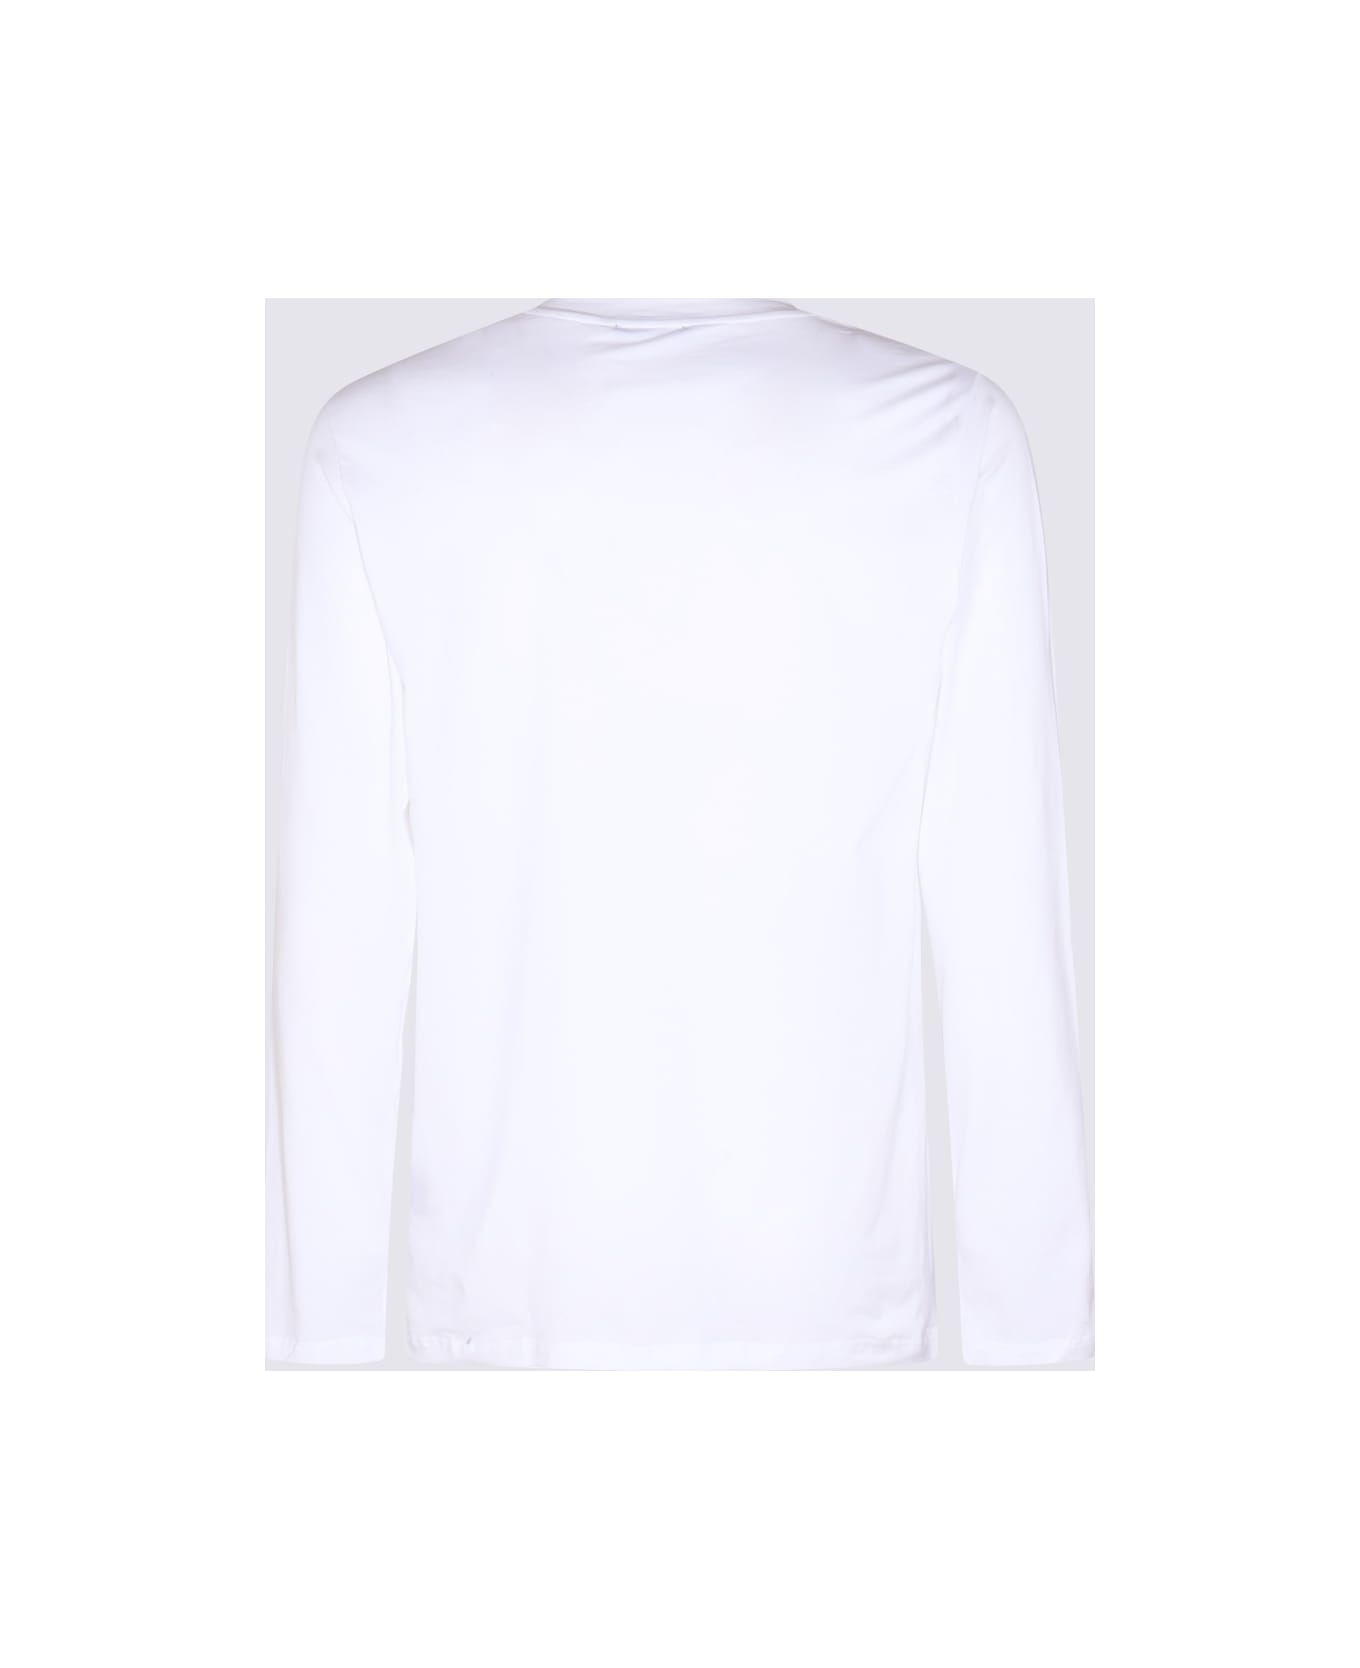 Tom Ford White Cotton Blend T-shirt - White